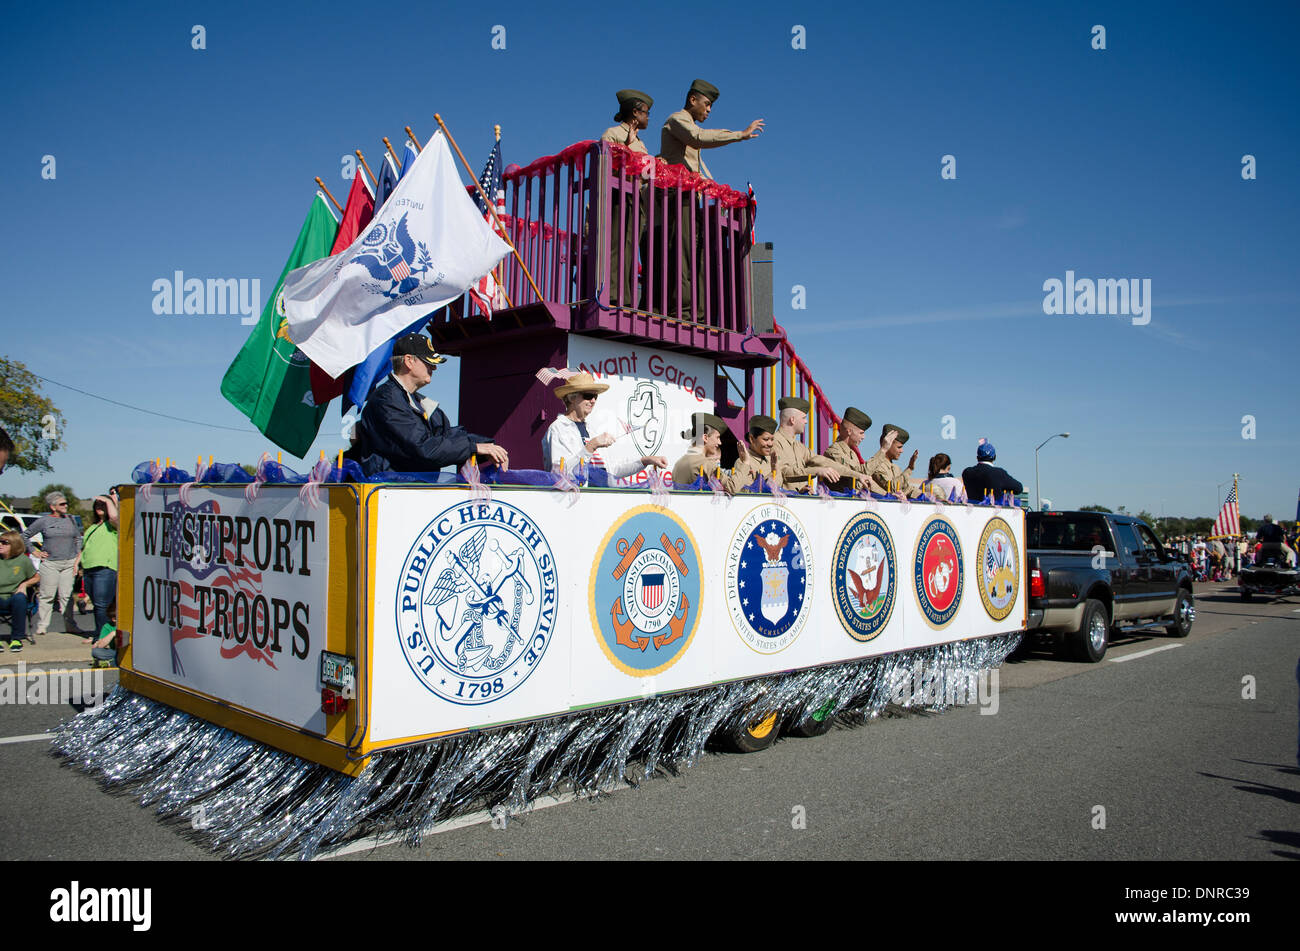 Veterans Day parade in Pensacola Florida USA Stock Photo Alamy